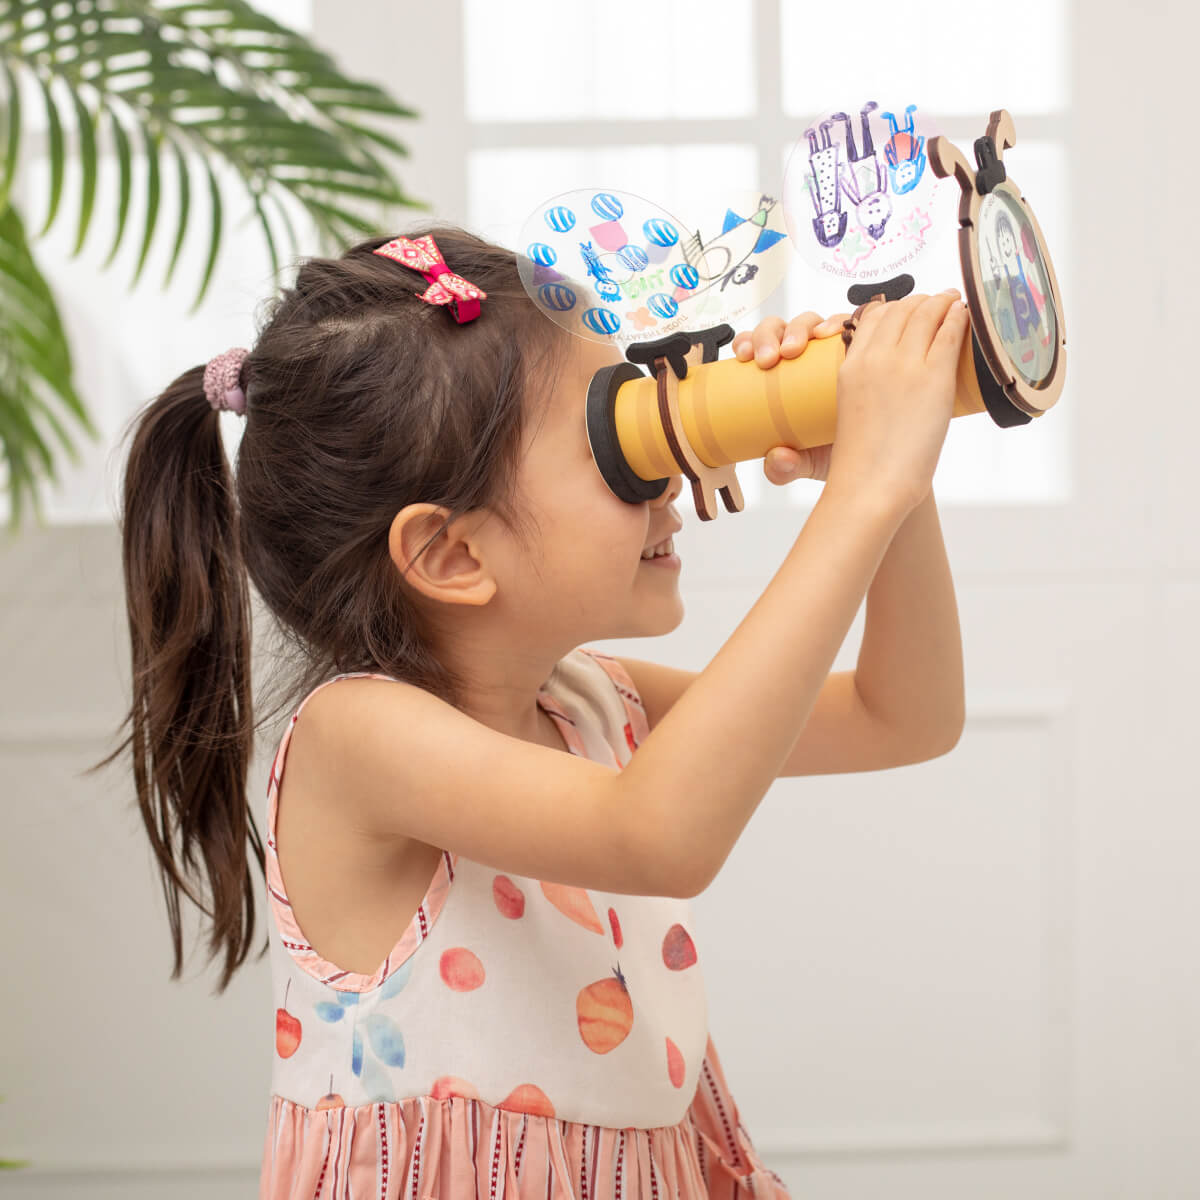 萬花筒maker創意手作增進幼兒社會情緒學習（SEL）。